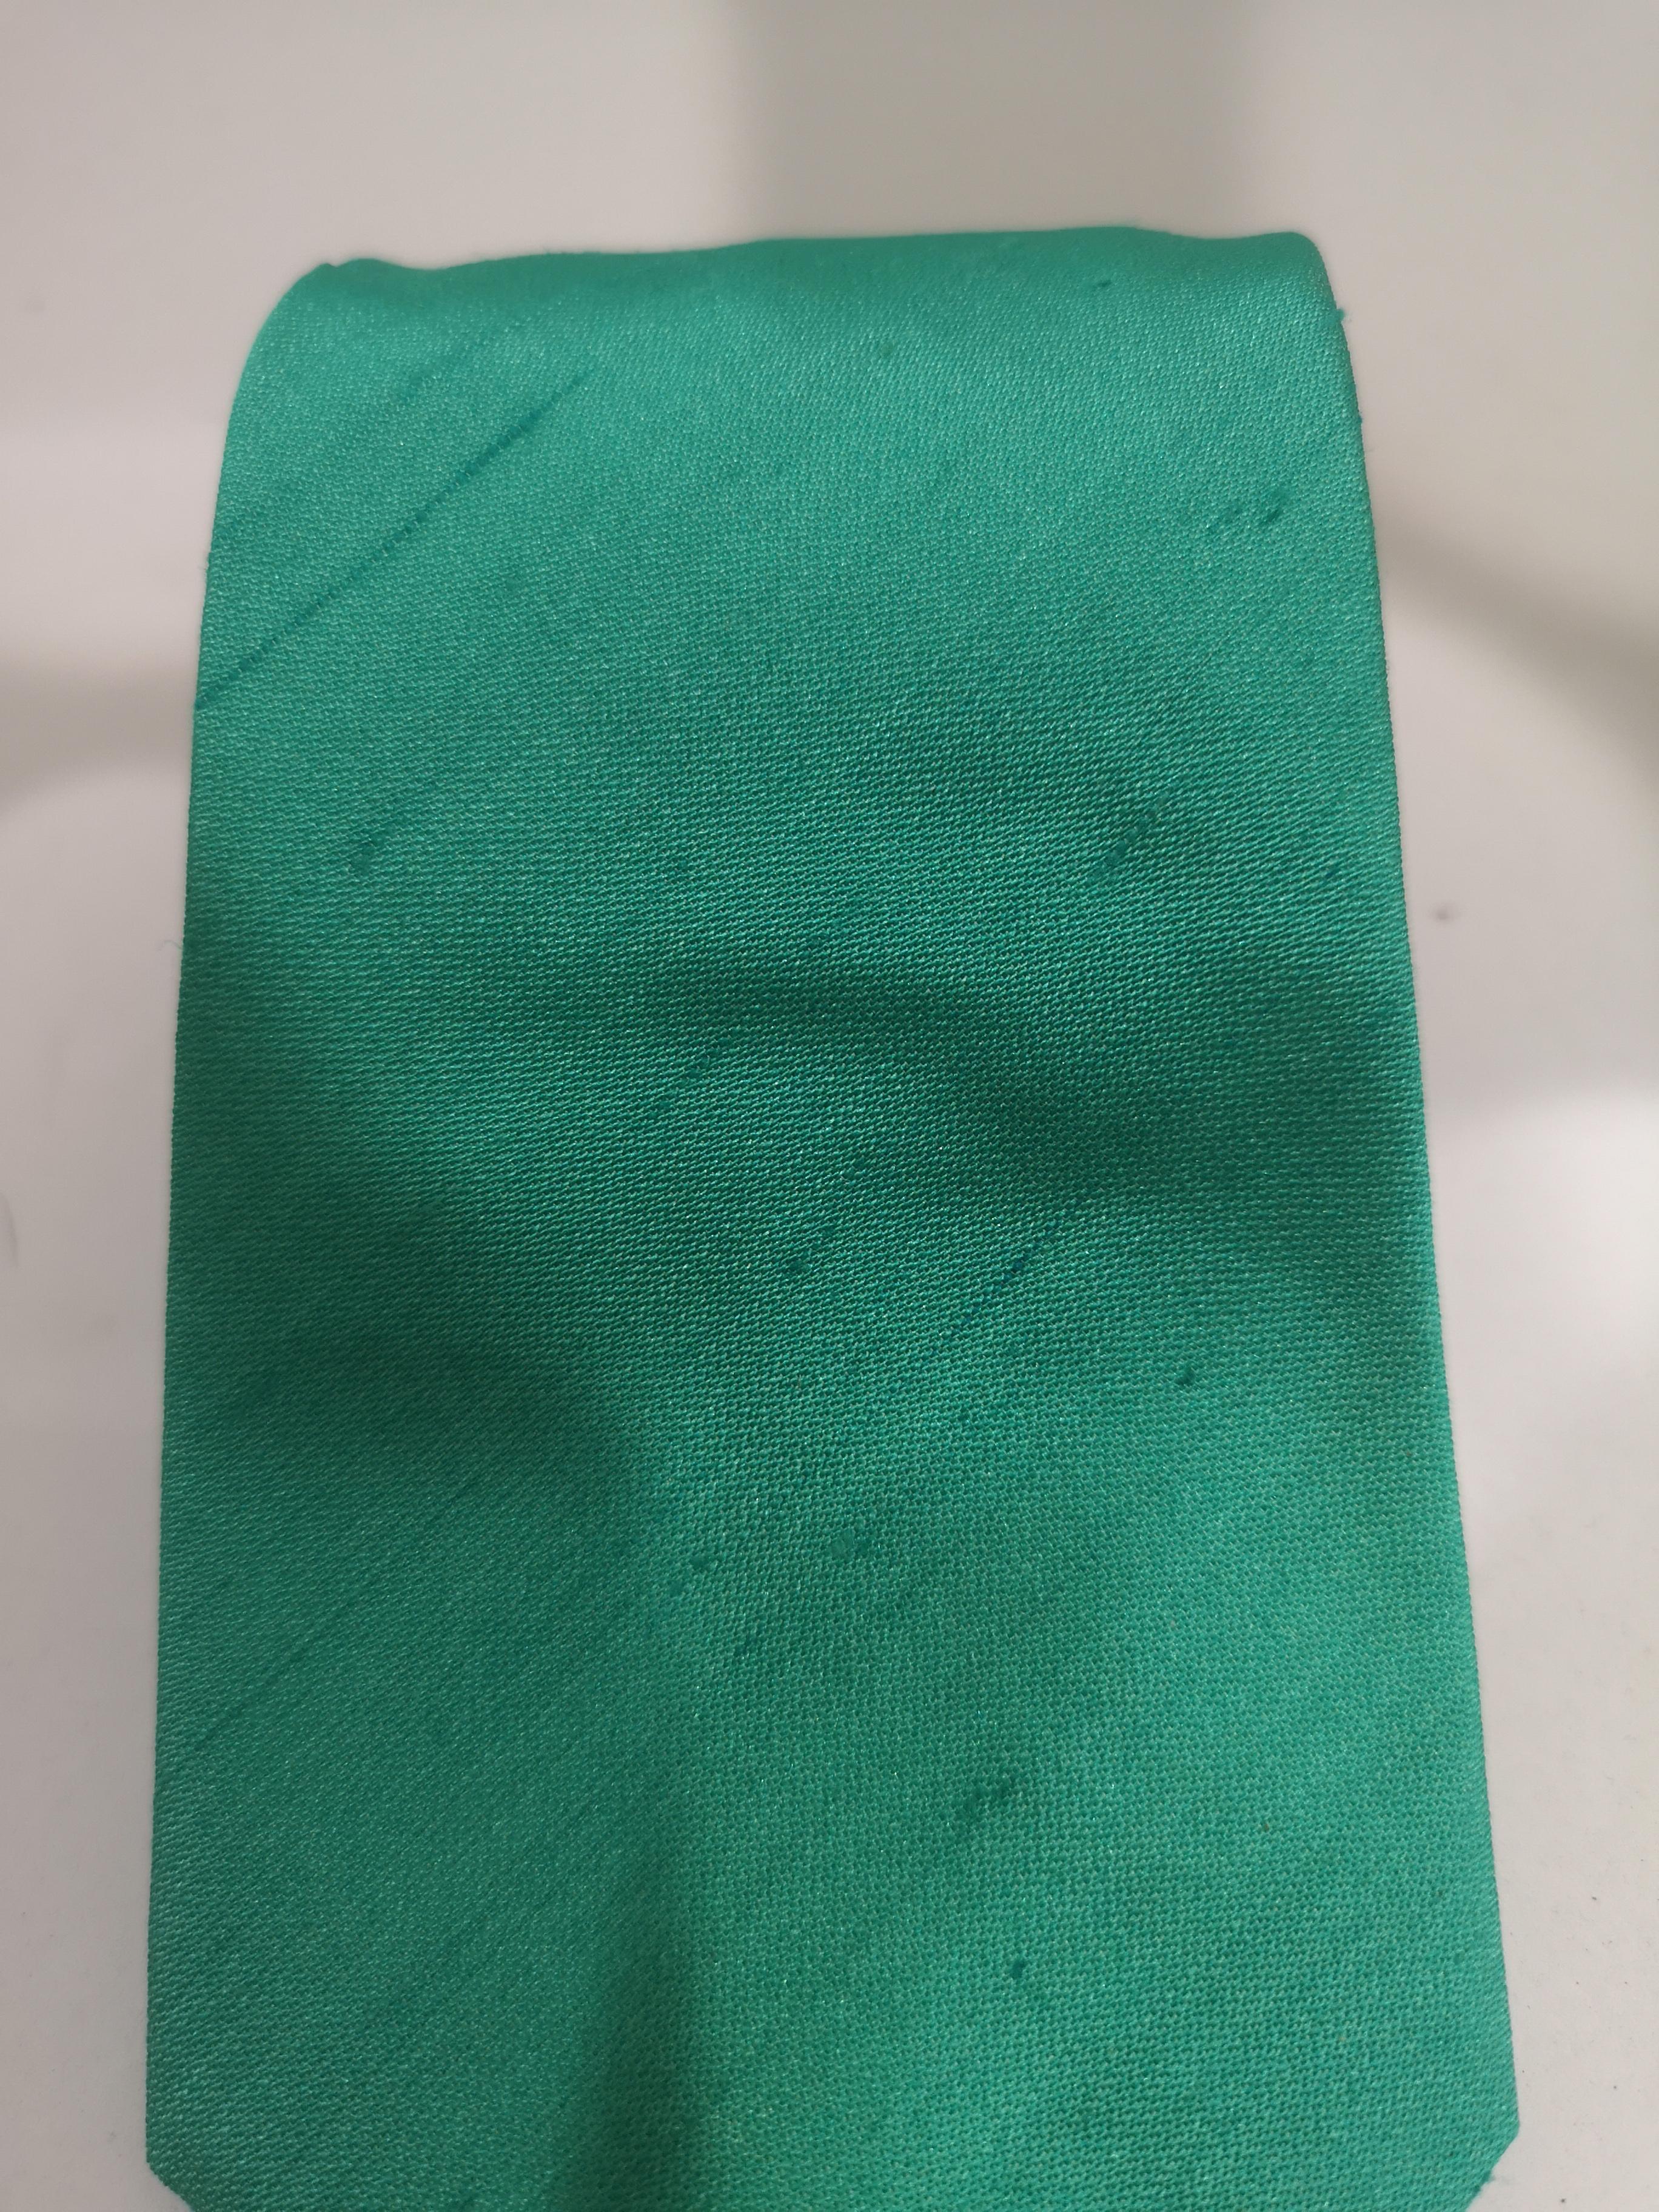 Women's or Men's Claude Montana green tie